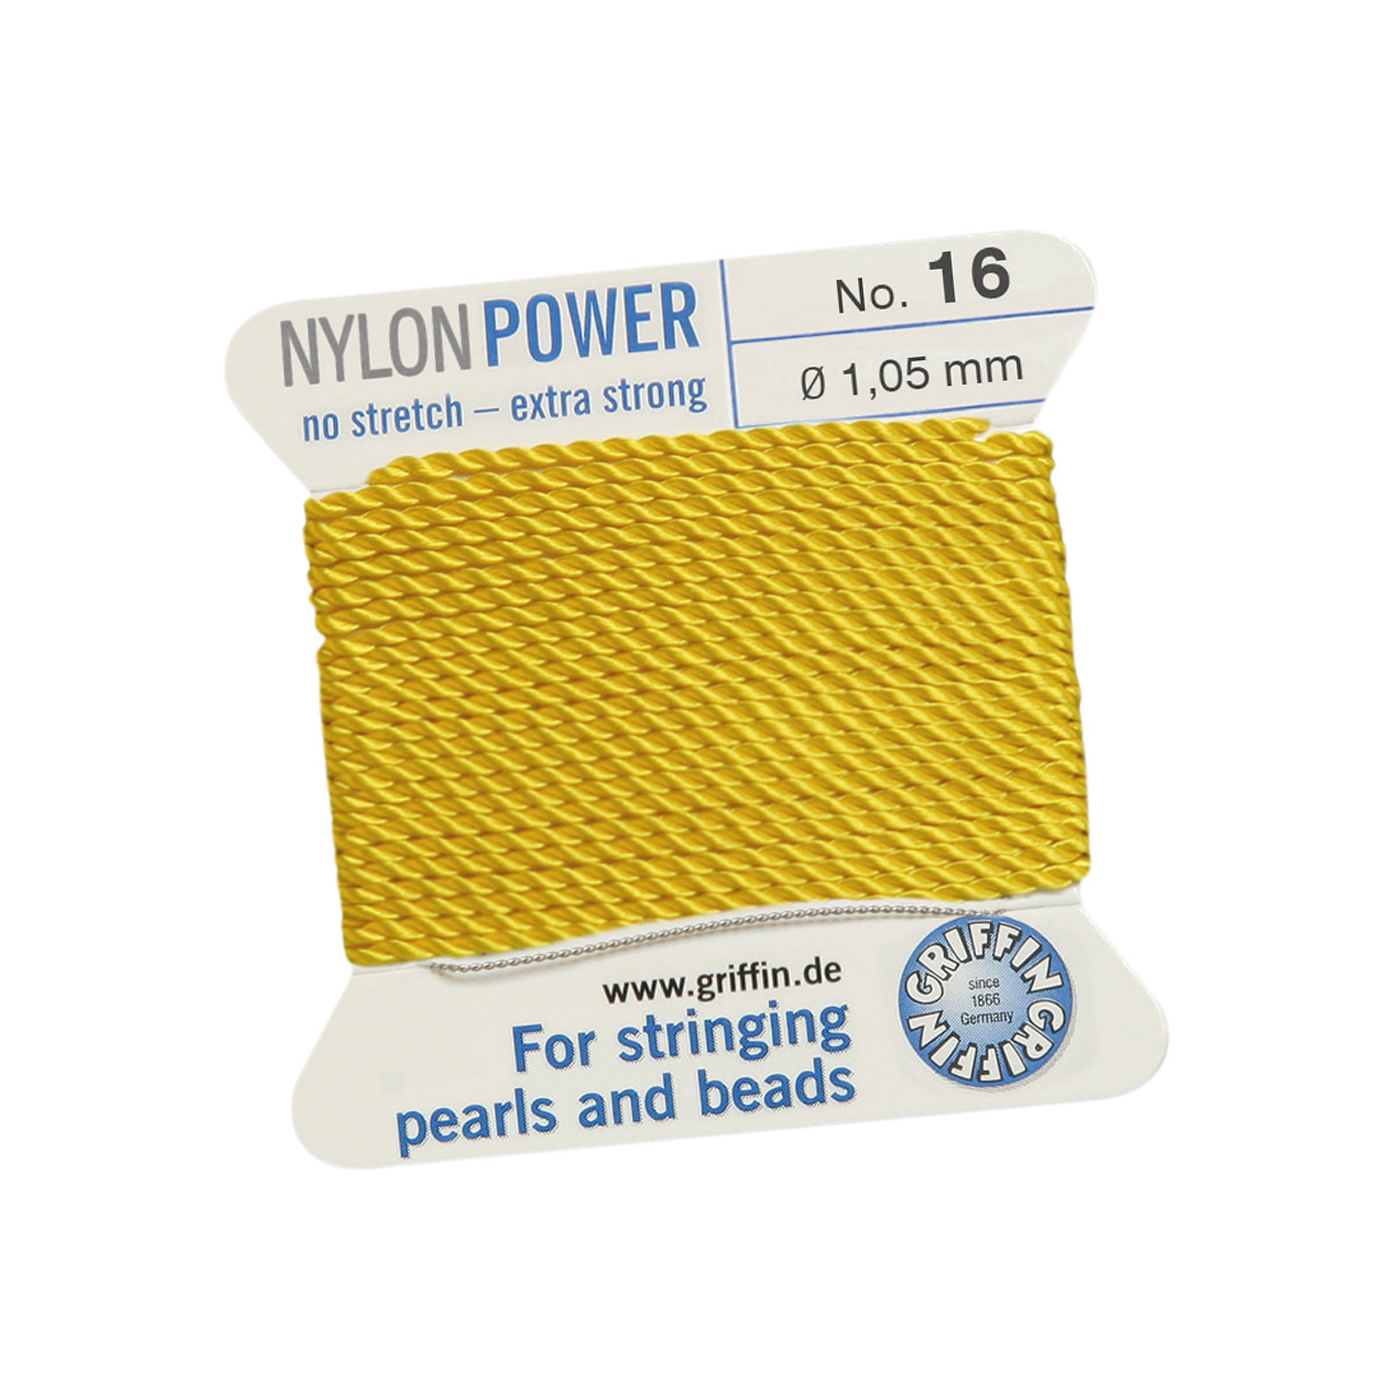 Bead Cord NylonPower, Light Yellow, No. 16 - 2 m